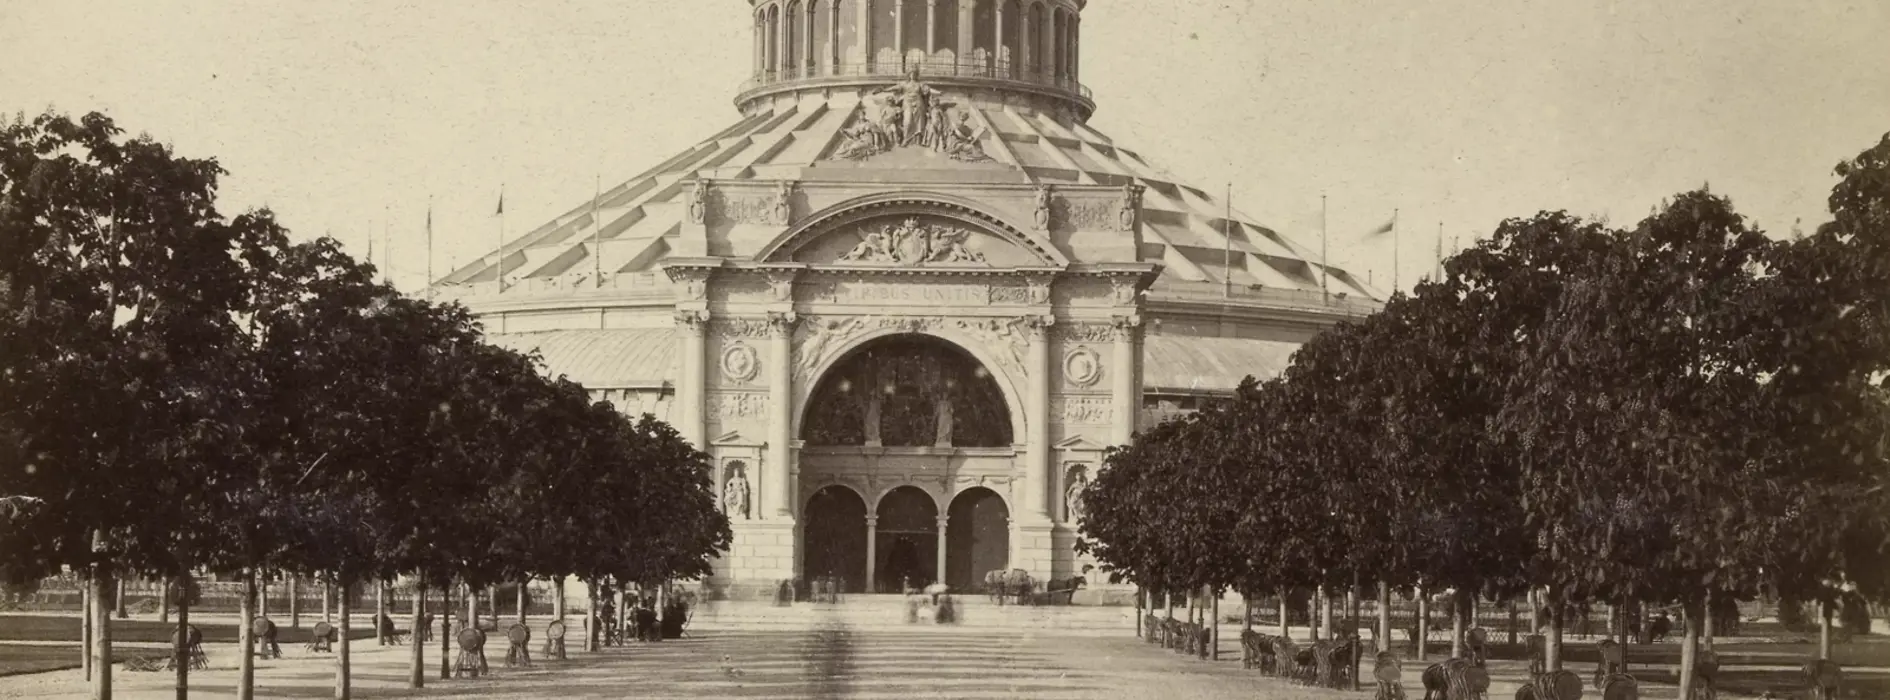 Exposition universelle de 1873 : la rotonde avec le portail sud